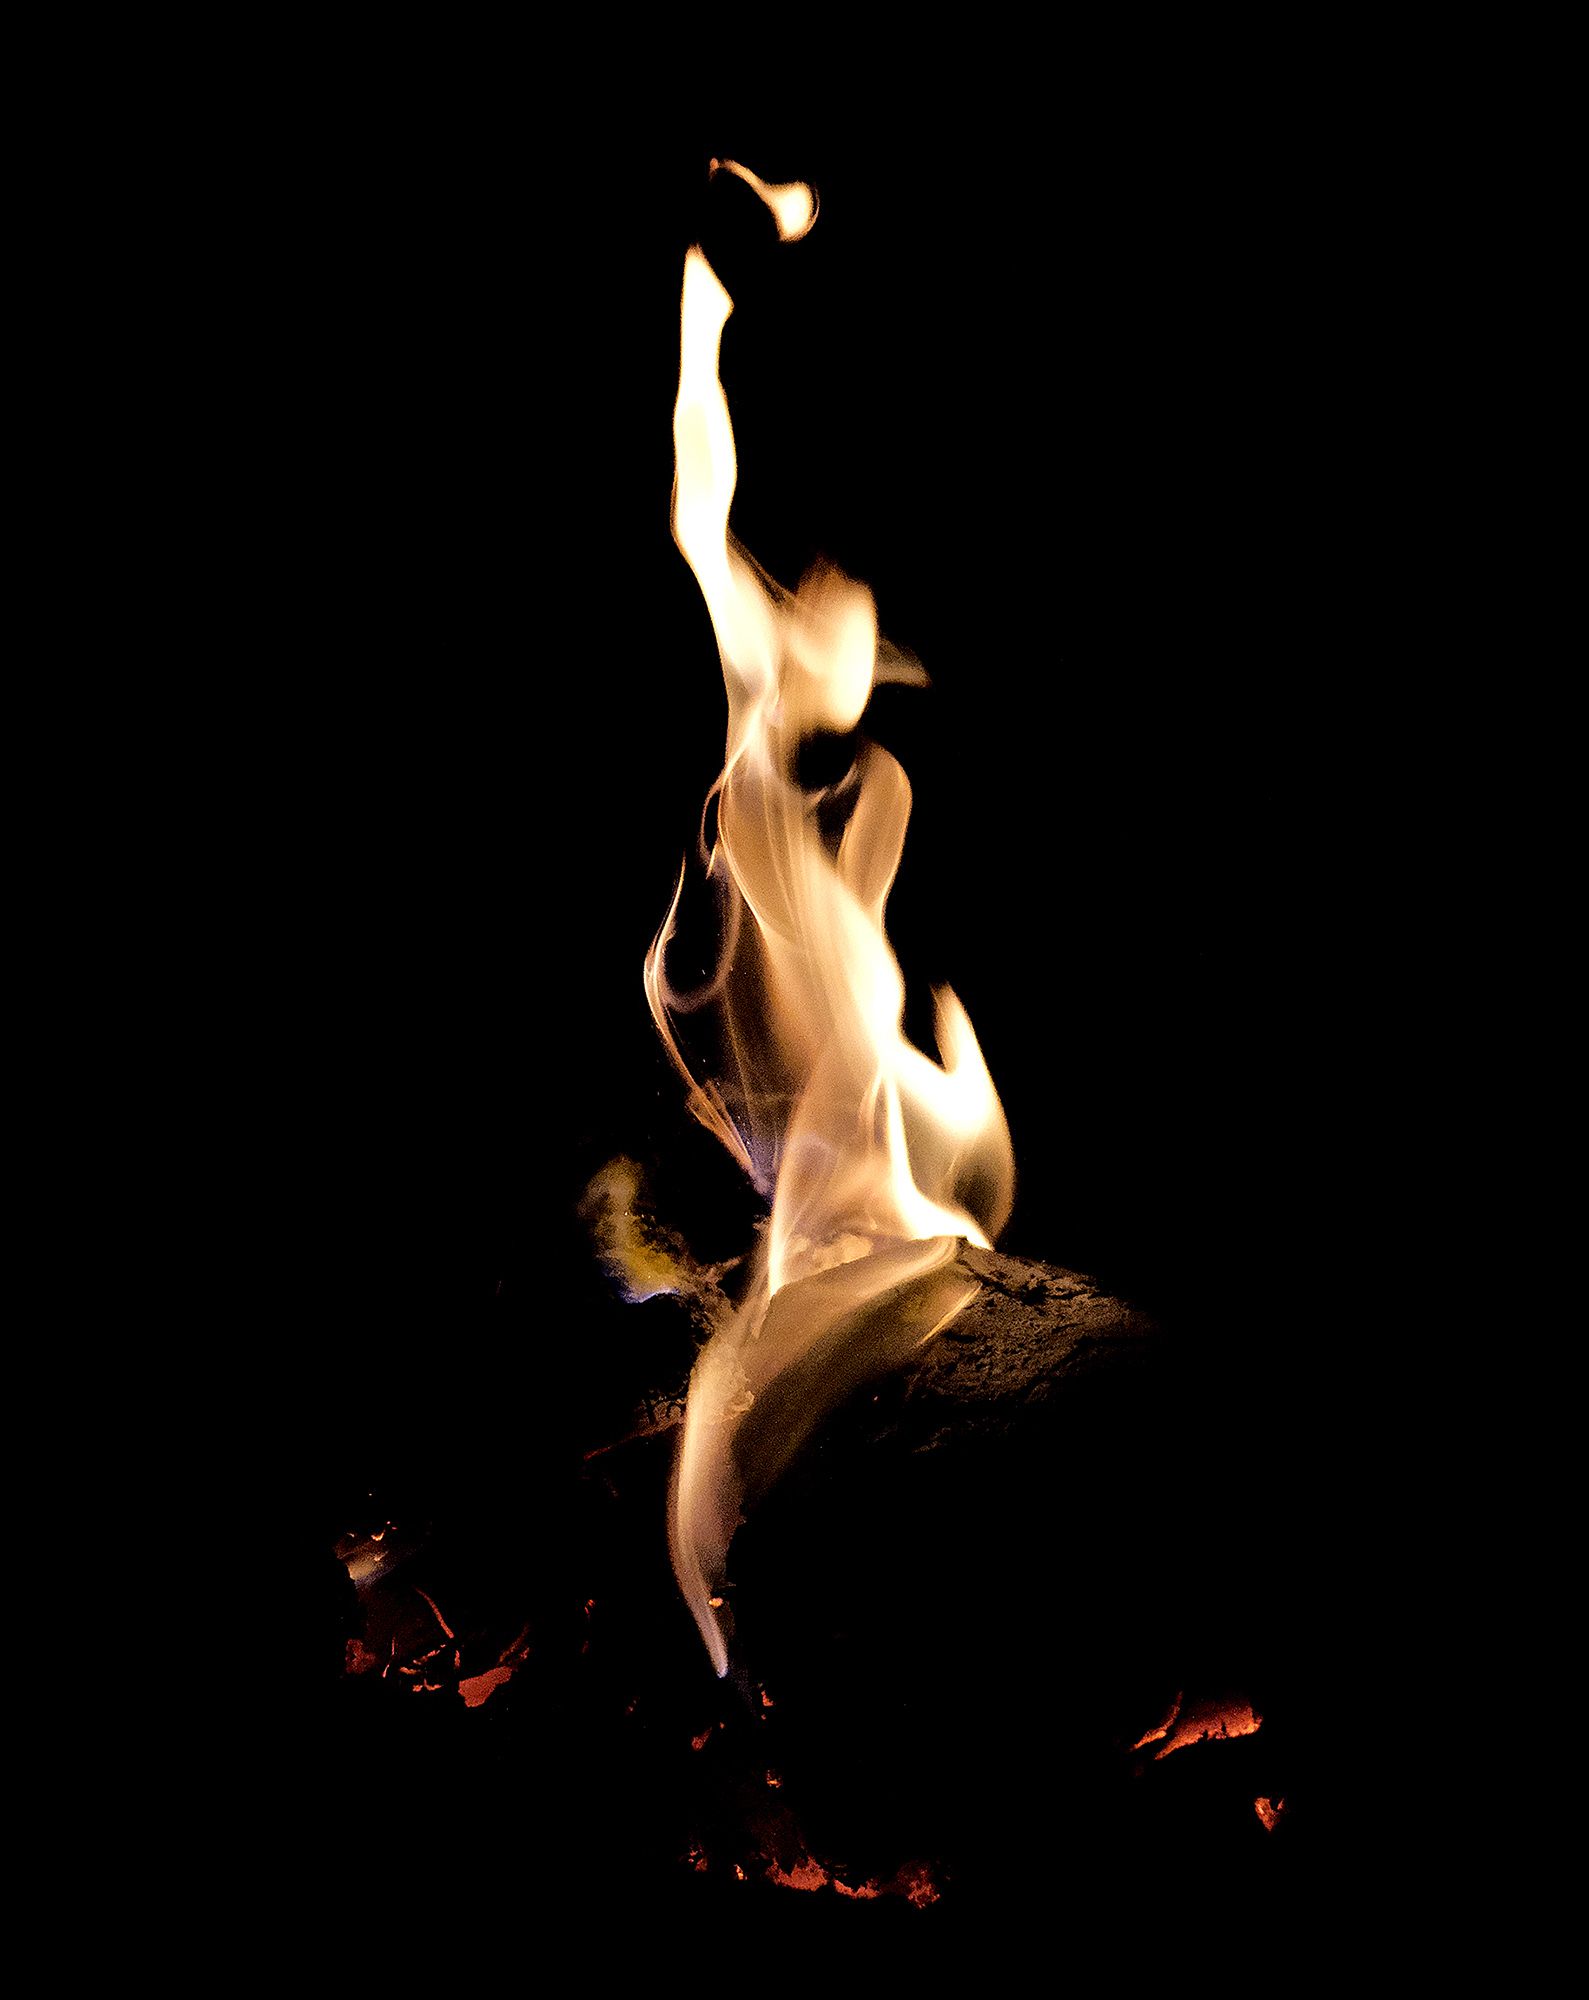 Spirit of the Fire #7 ©2021 L. Aviva Diamond